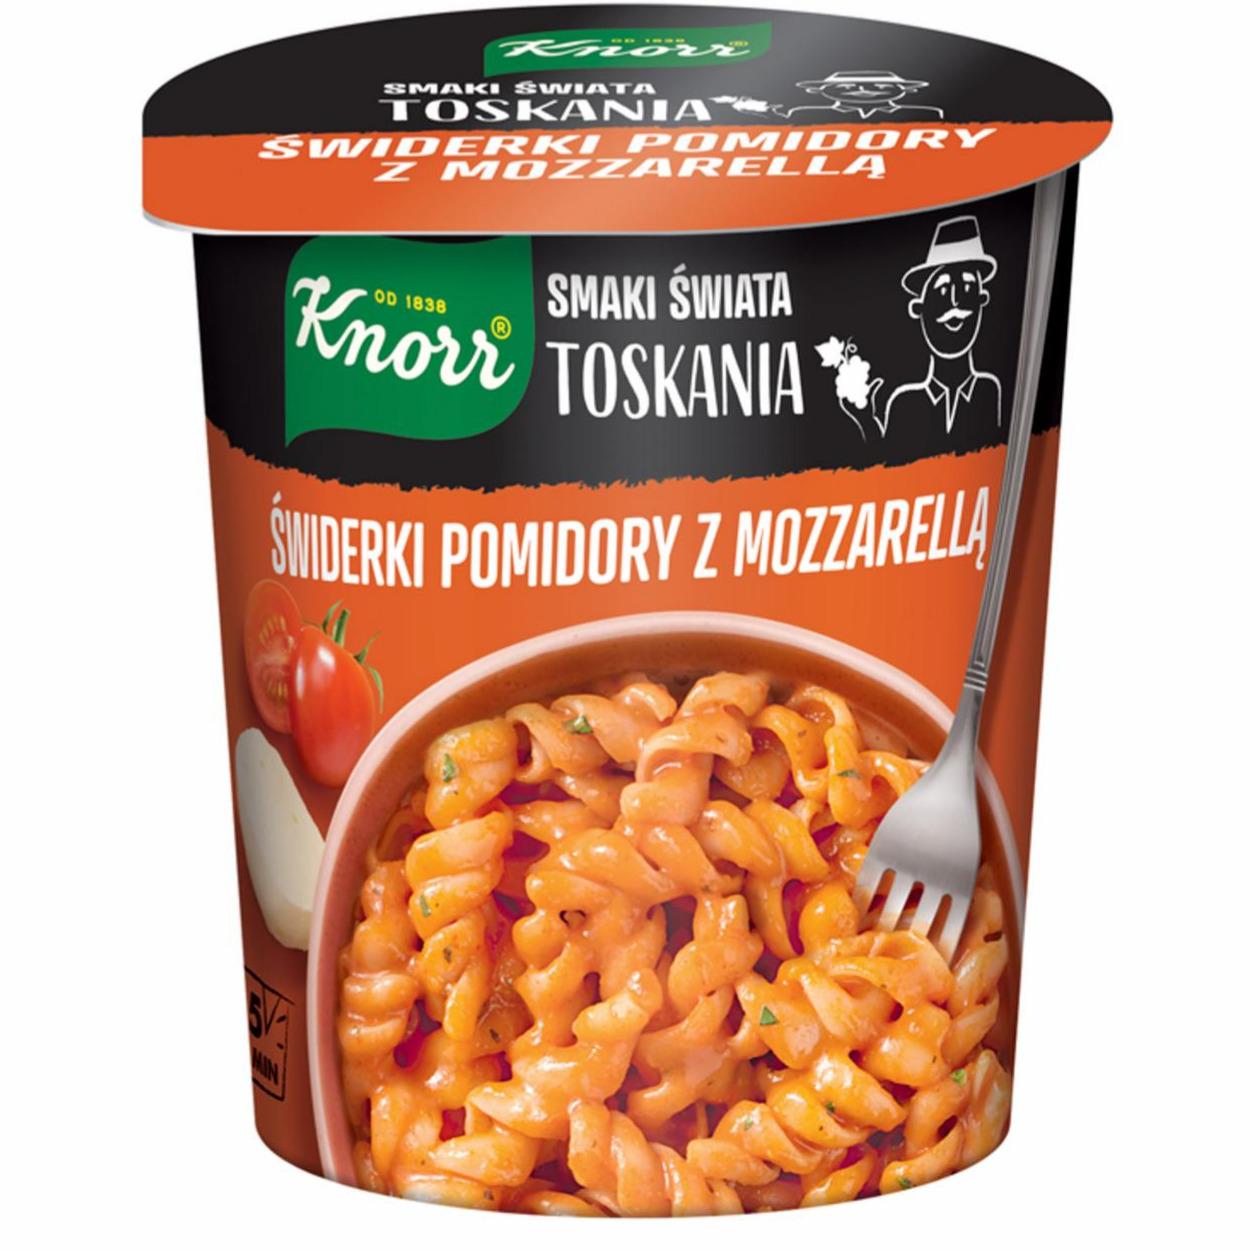 Zdjęcia - Smaki Świata Toskania Świderki pomidory z mozzarellą Knorr